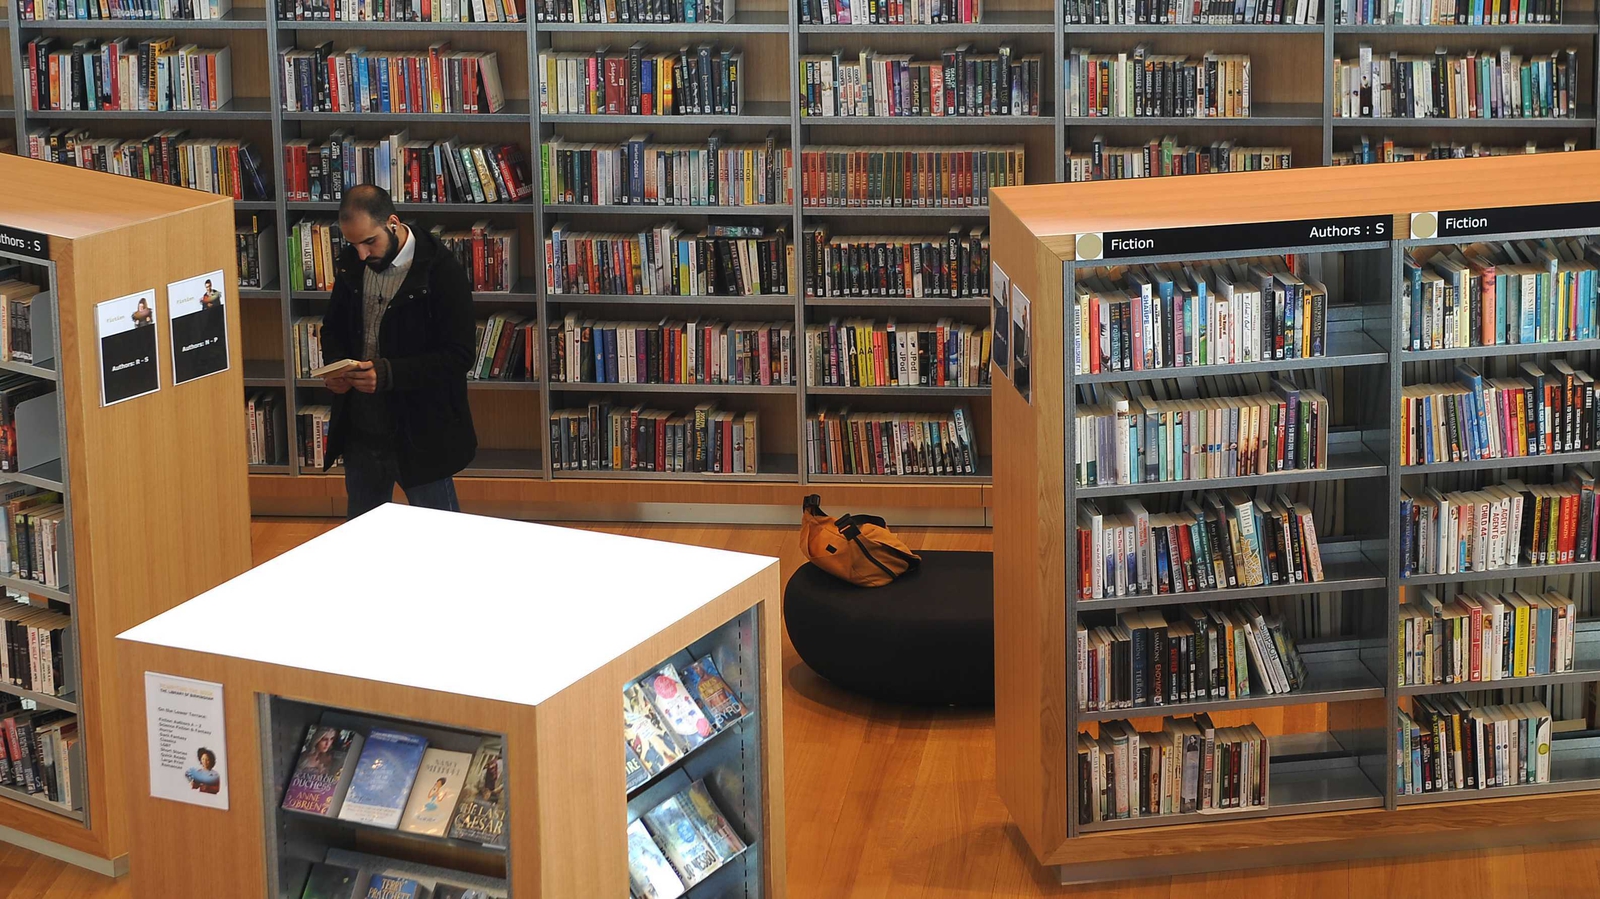 Зачем используется библиотека requests. Библиотека бизнесмена. The Council библиотека. Аста в библиотеке. Складывающиеся книгохранилища.